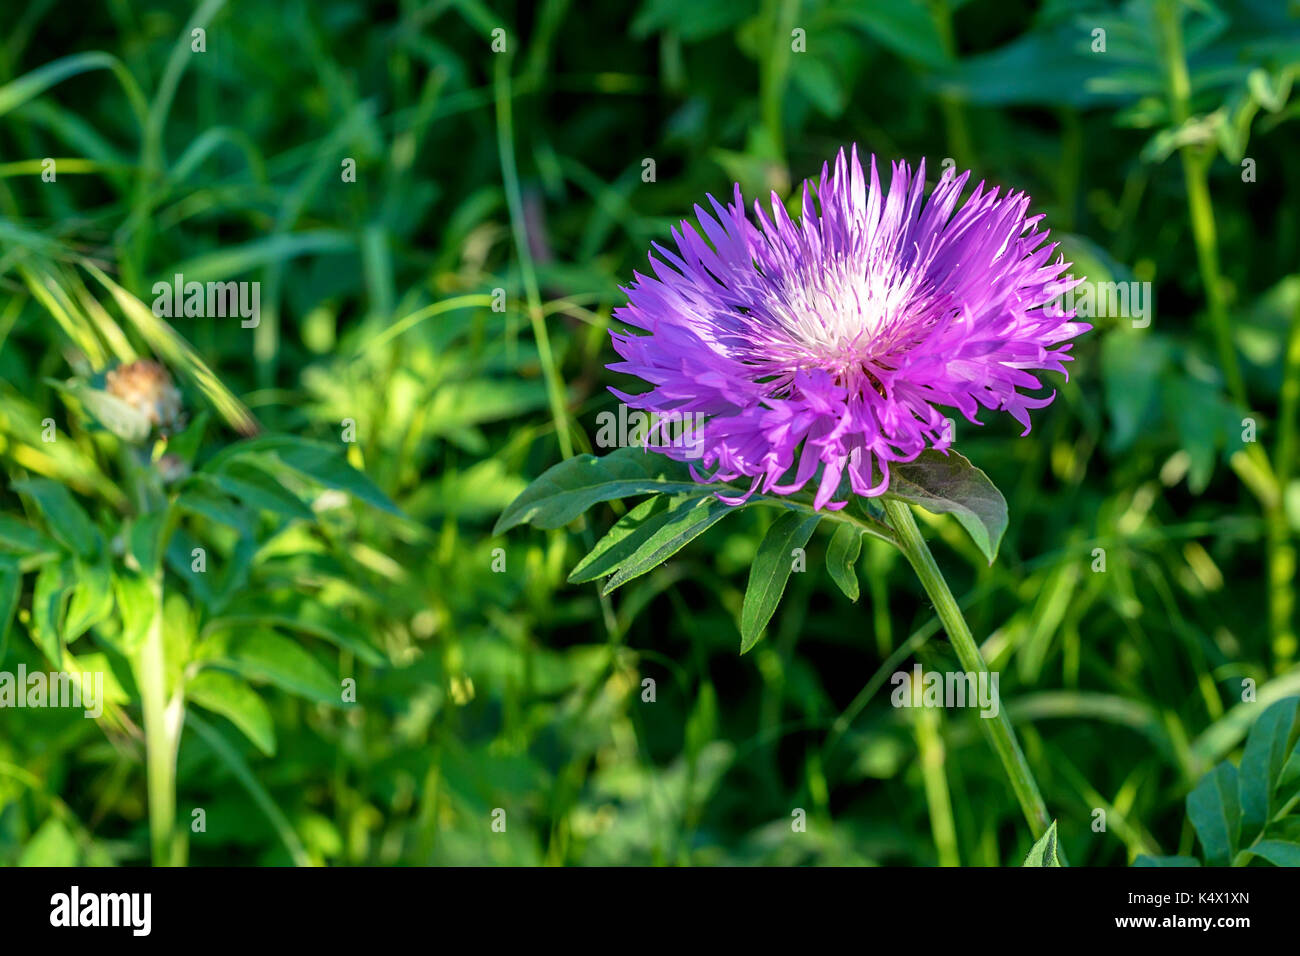 Flower of the whitewash cornflower Stock Photo